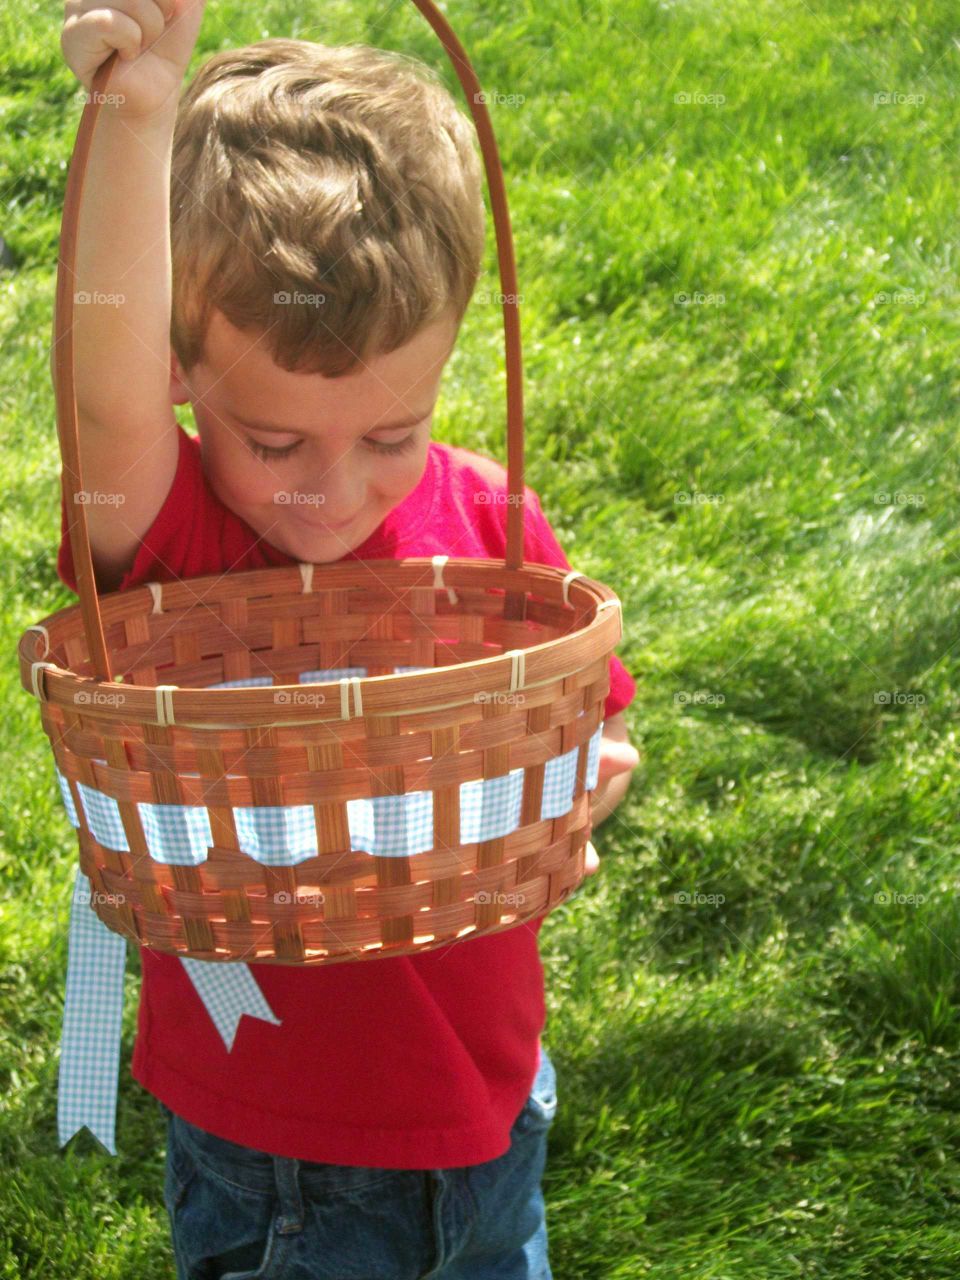 Easter basket!